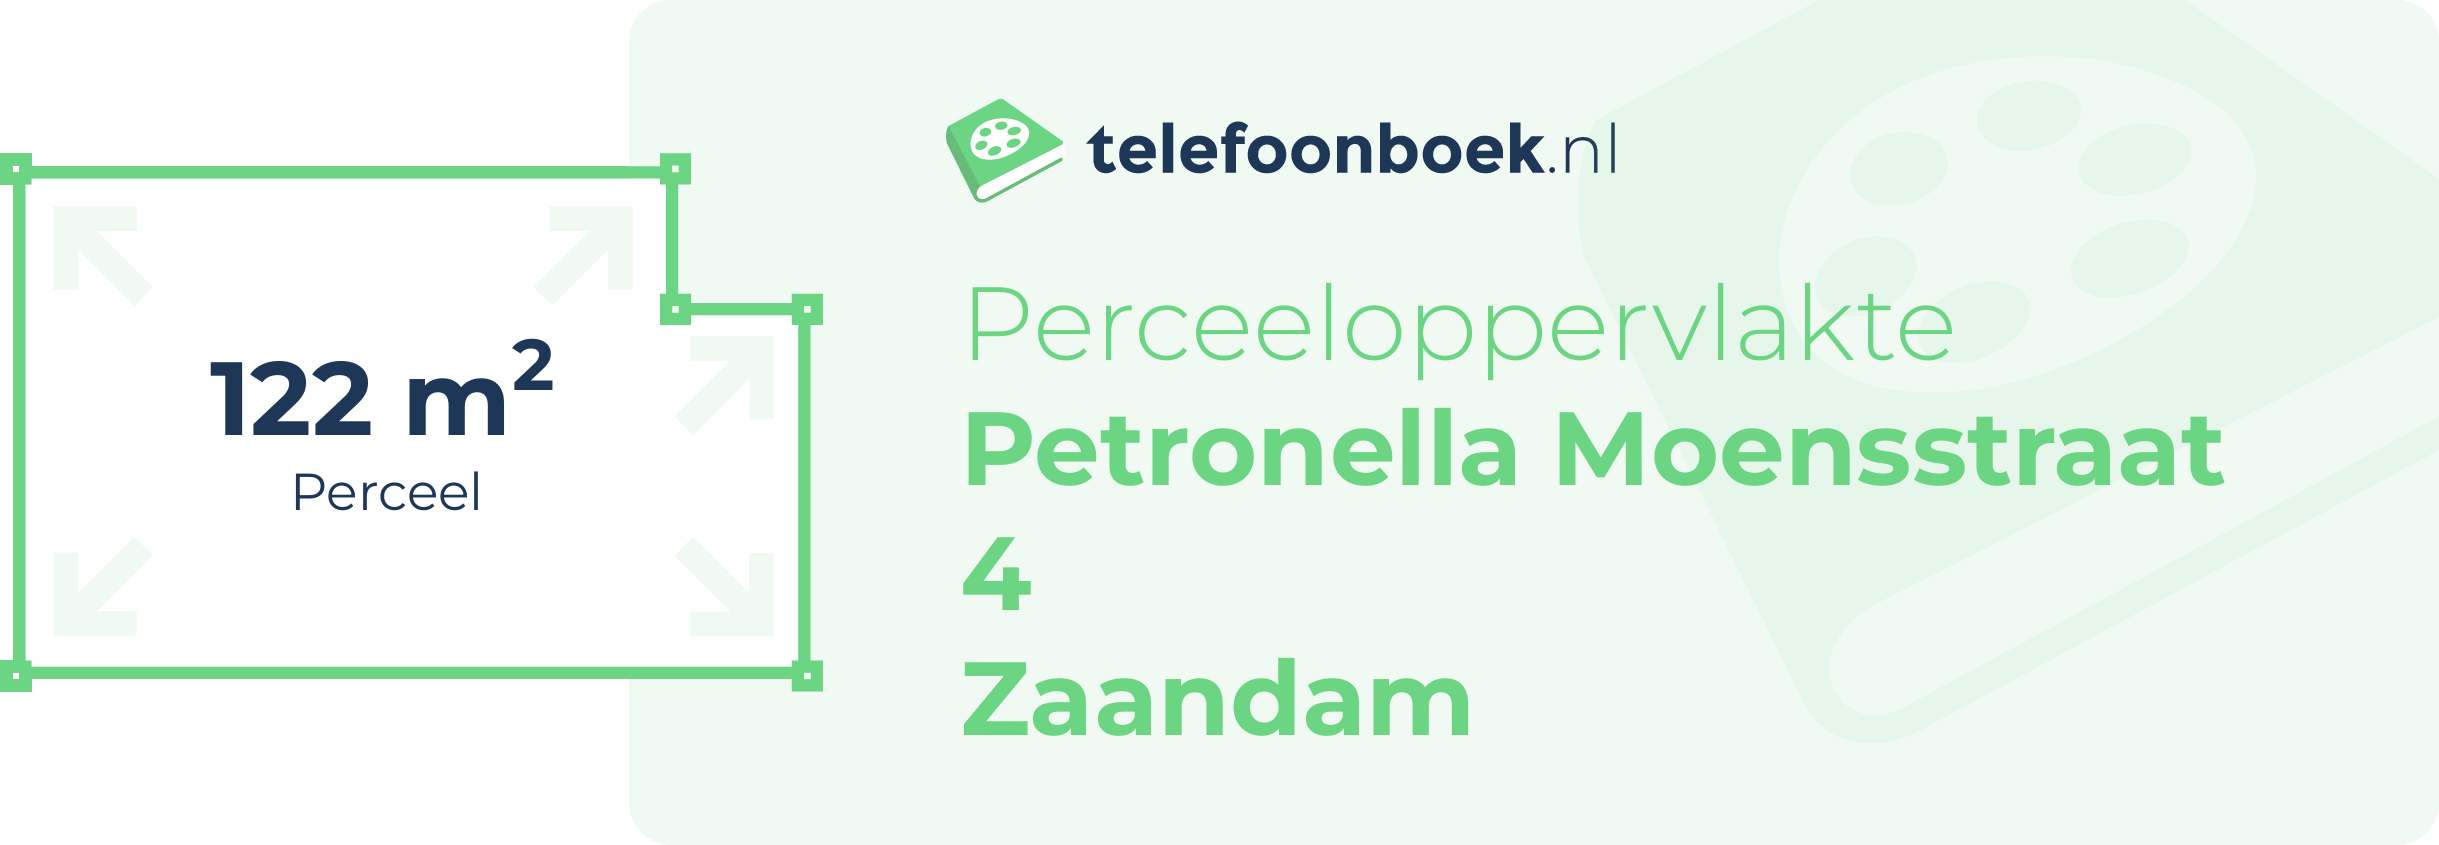 Perceeloppervlakte Petronella Moensstraat 4 Zaandam